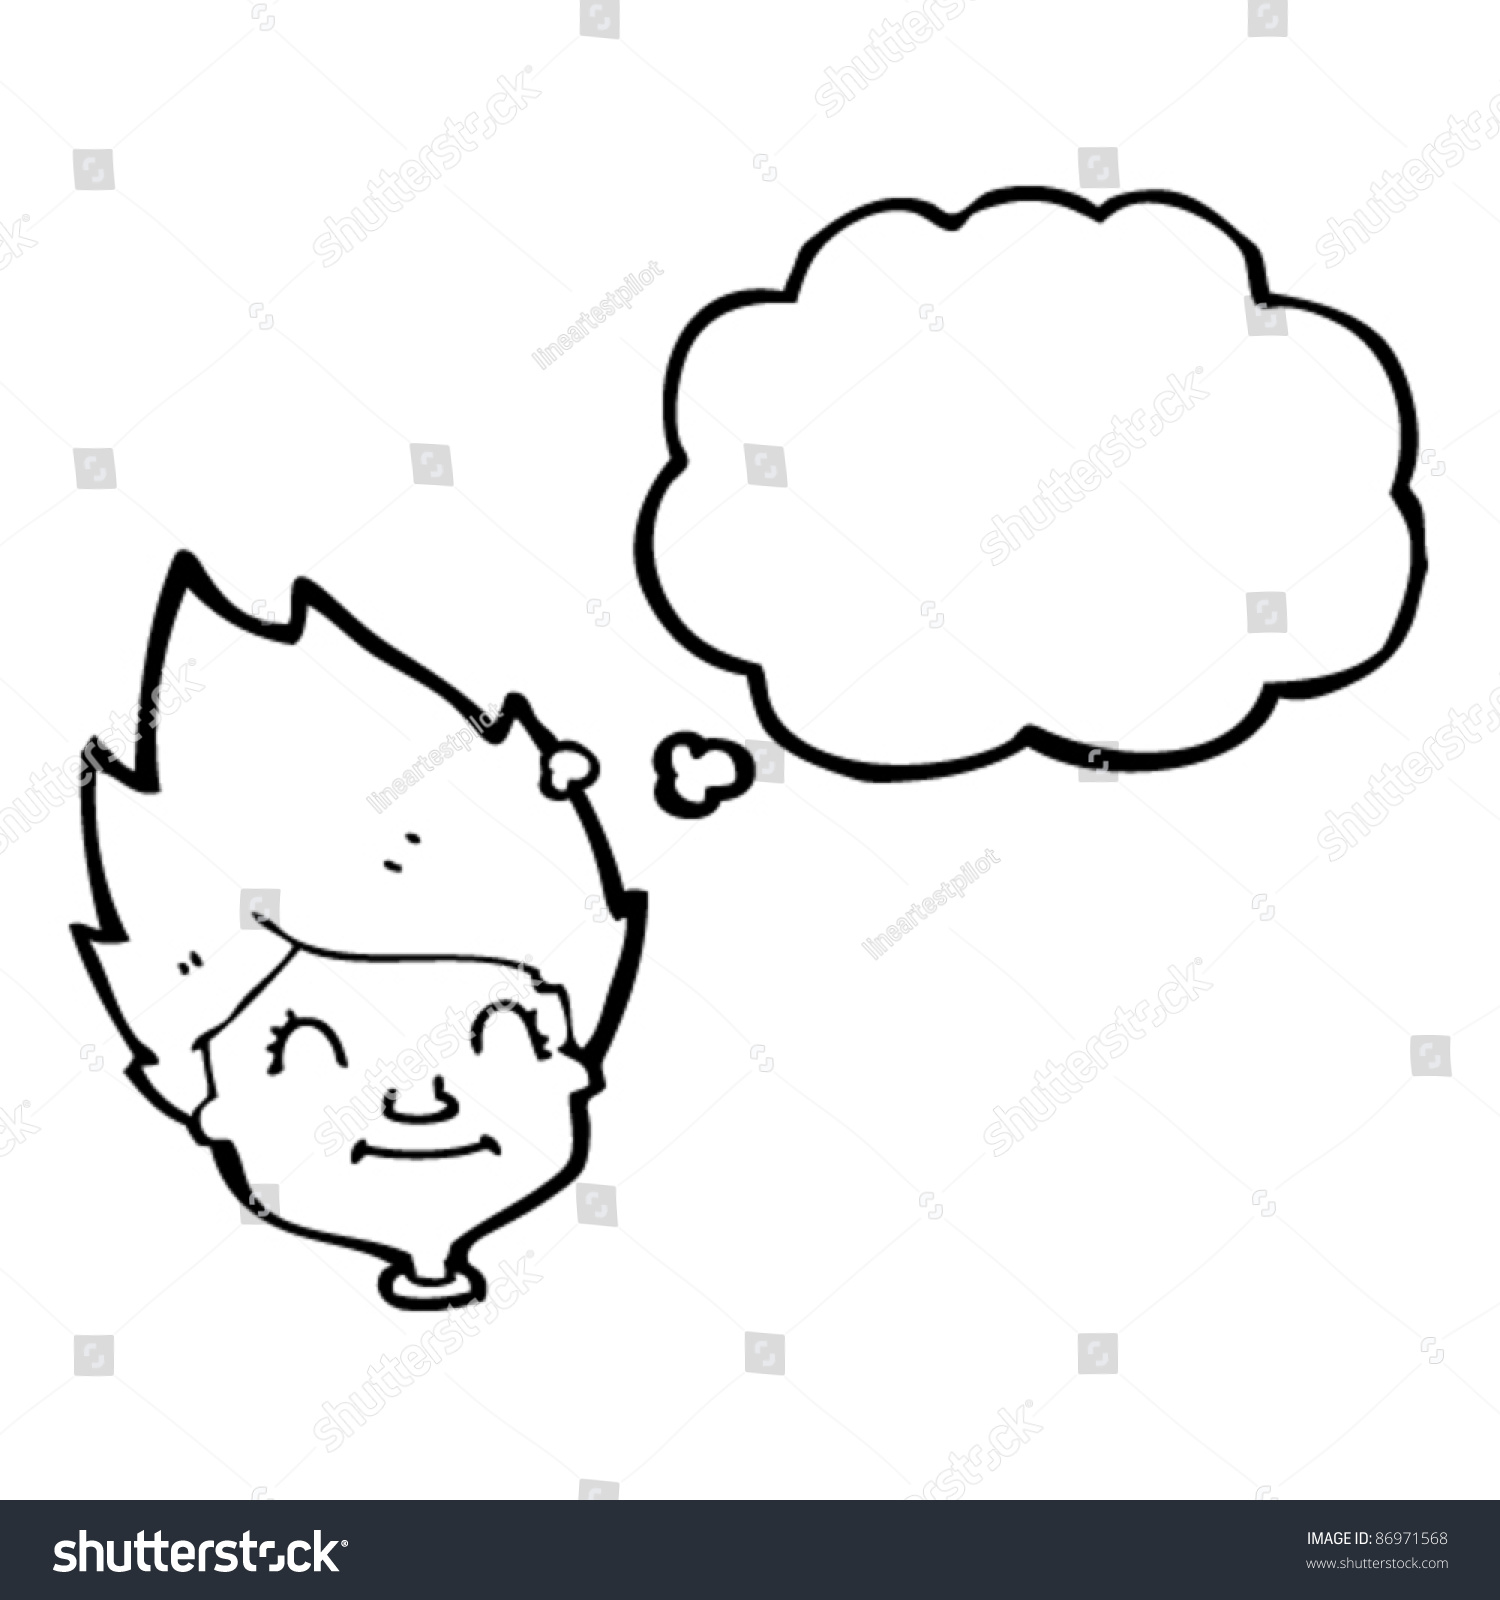 Daydreaming Boy Cartoon Stock Vector Illustration 86971568 : Shutterstock